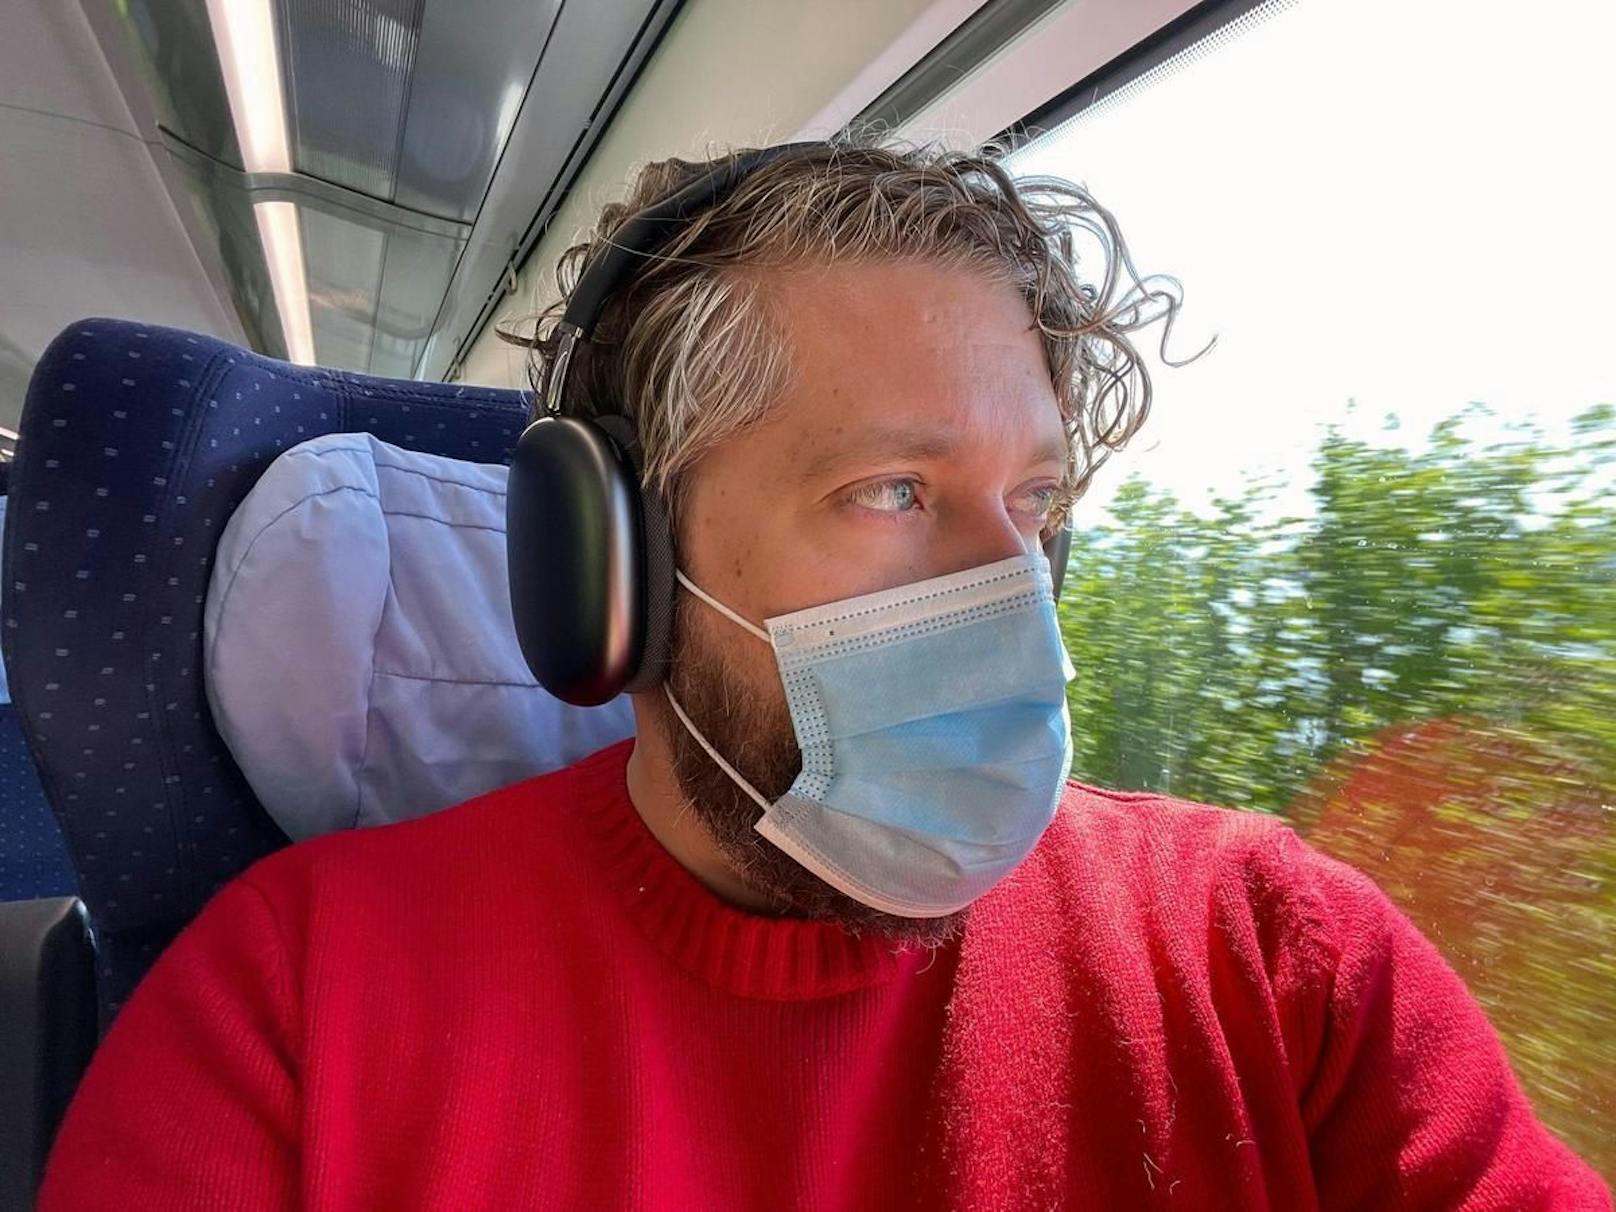 Lärm ist Vergangenheit: Die Airpods Max blenden im Zug alle Störgeräusche aus. Keine Sorge wegen der Schutzmaske, das Bild entstand in der Schweiz.&nbsp;